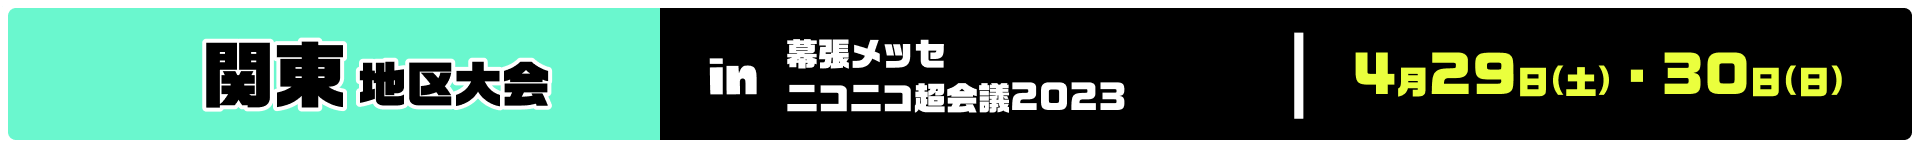 関東地区大会 in 幕張メッセ ニコニコ超会議2023 4月29日(土)・30日(日)